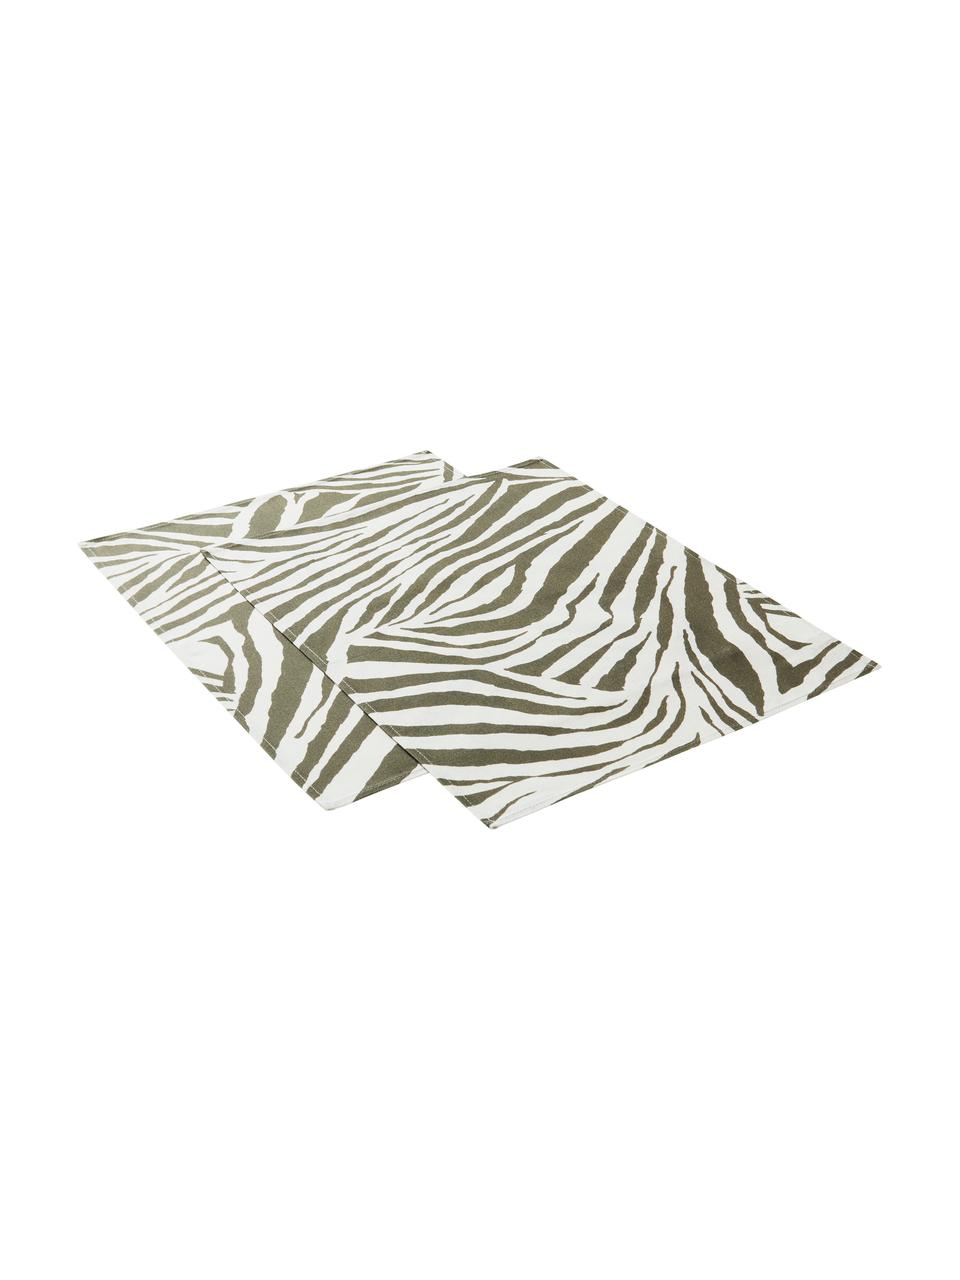 Bavlněné prostírání se vzorem zebry Zadie, 2 ks, 100 % bavlna, Olivová, krémově bílá, Š 35 cm, D 45 cm